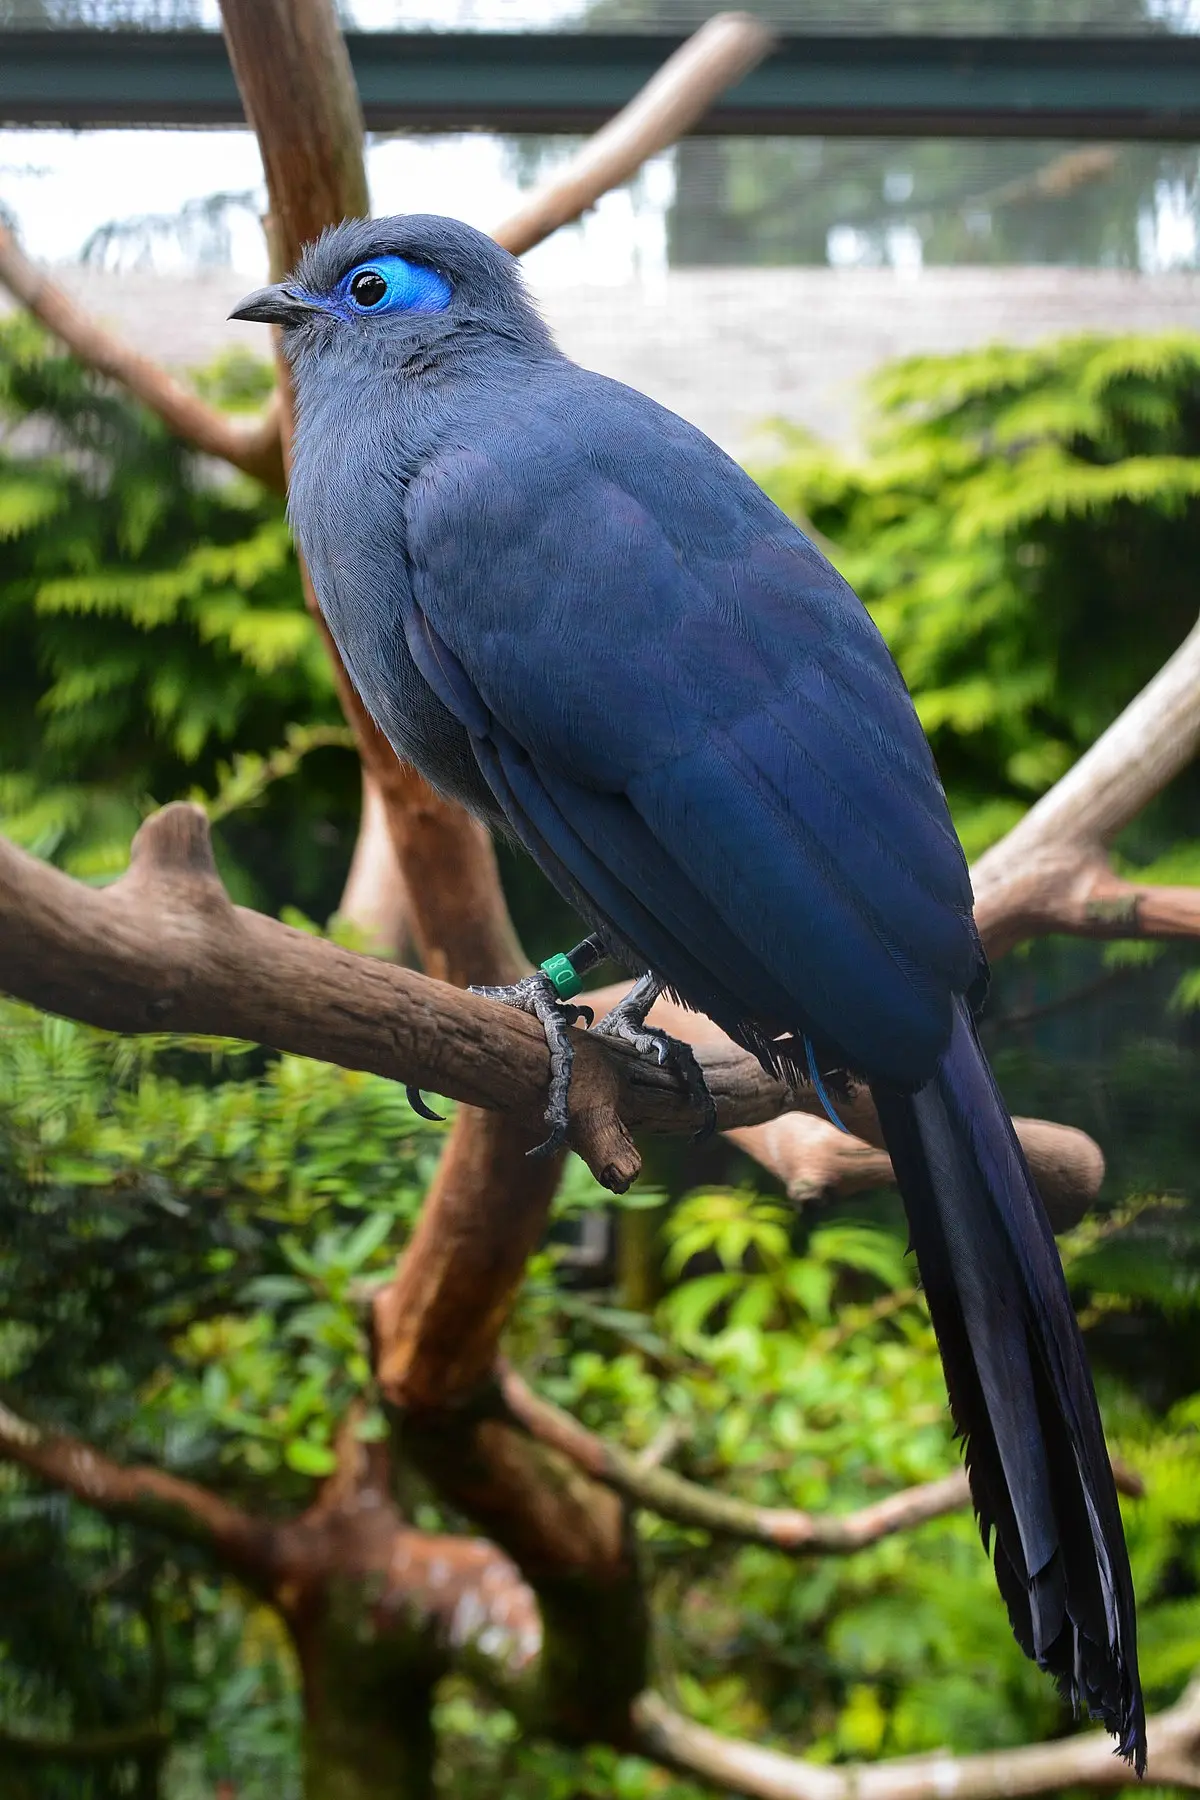 ave agresivo madagascar color azul - Cuál es el animal más azul